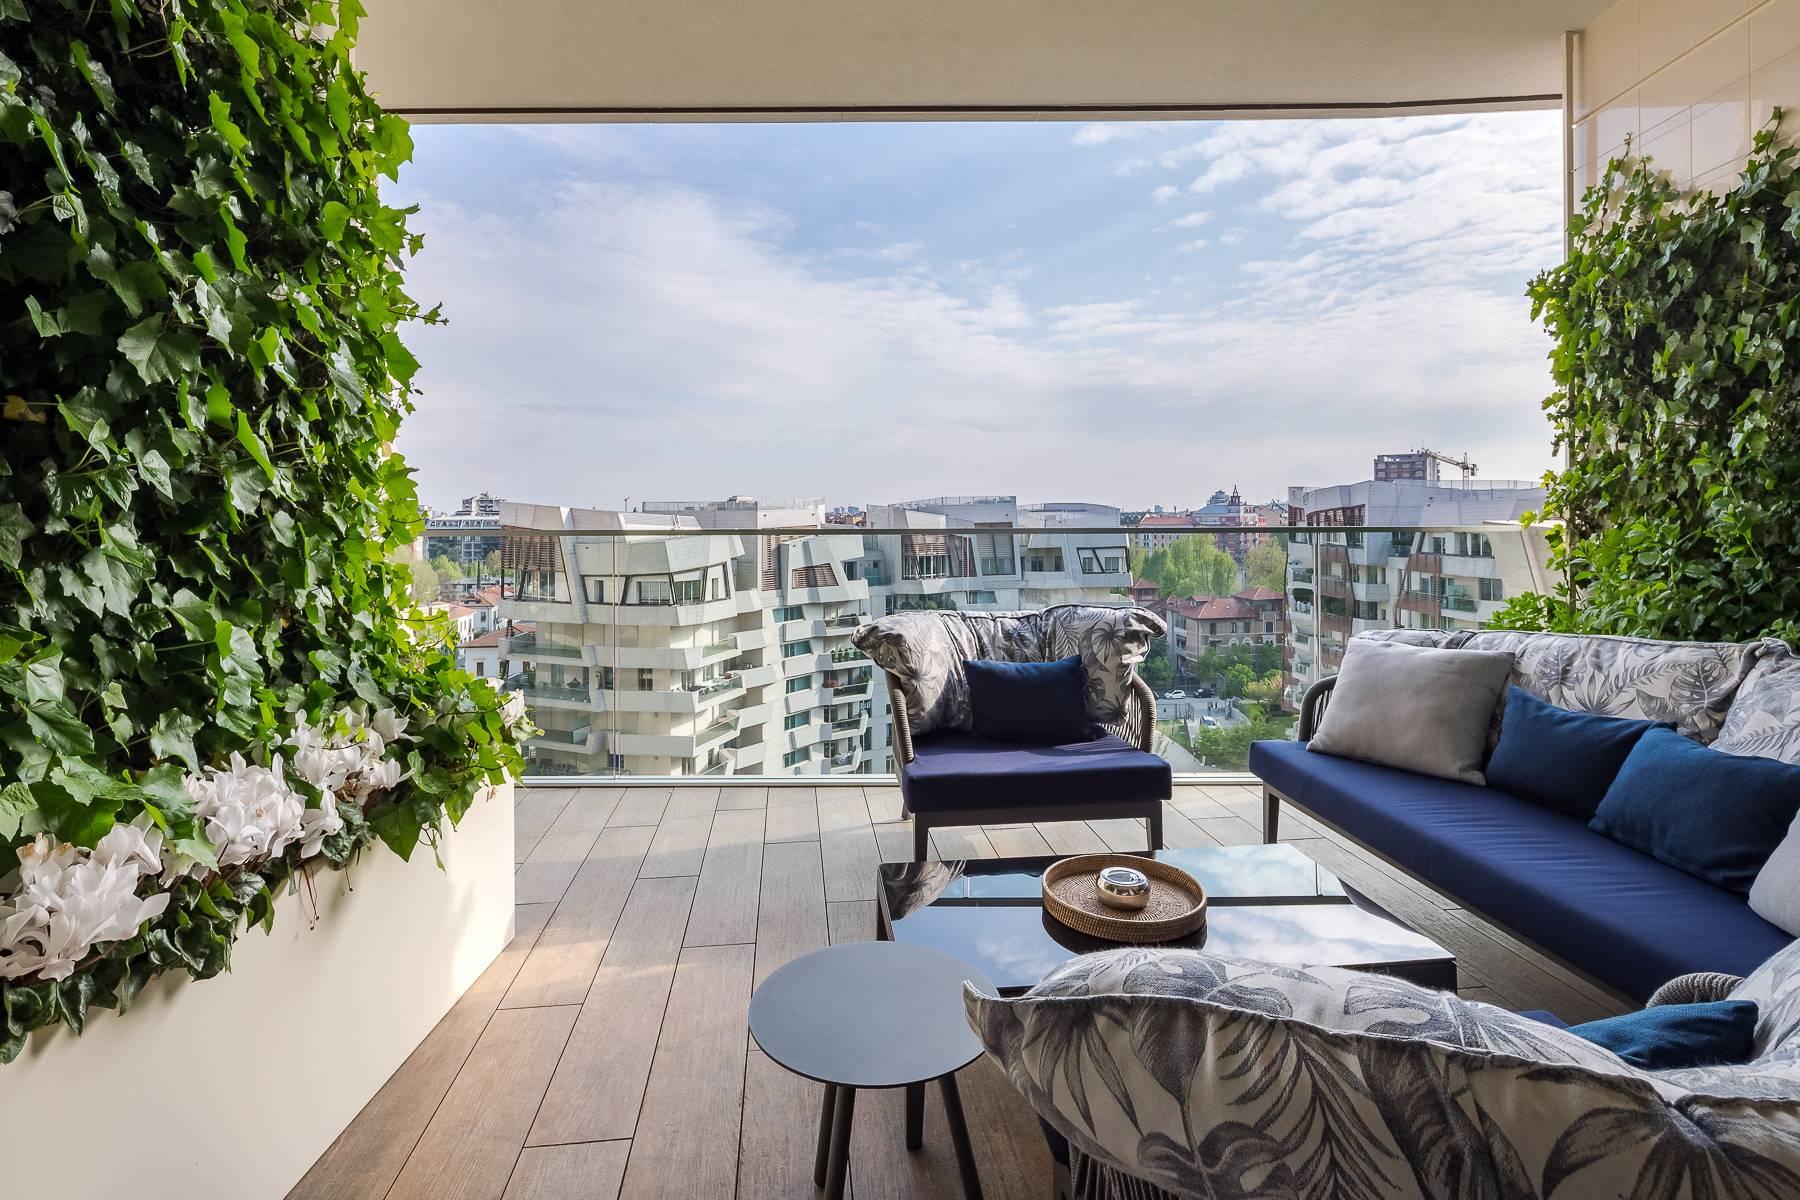 Wunderschöne möblierte Design-Wohnung mit Terrassen im CitylIfe Stadtviertel - 6